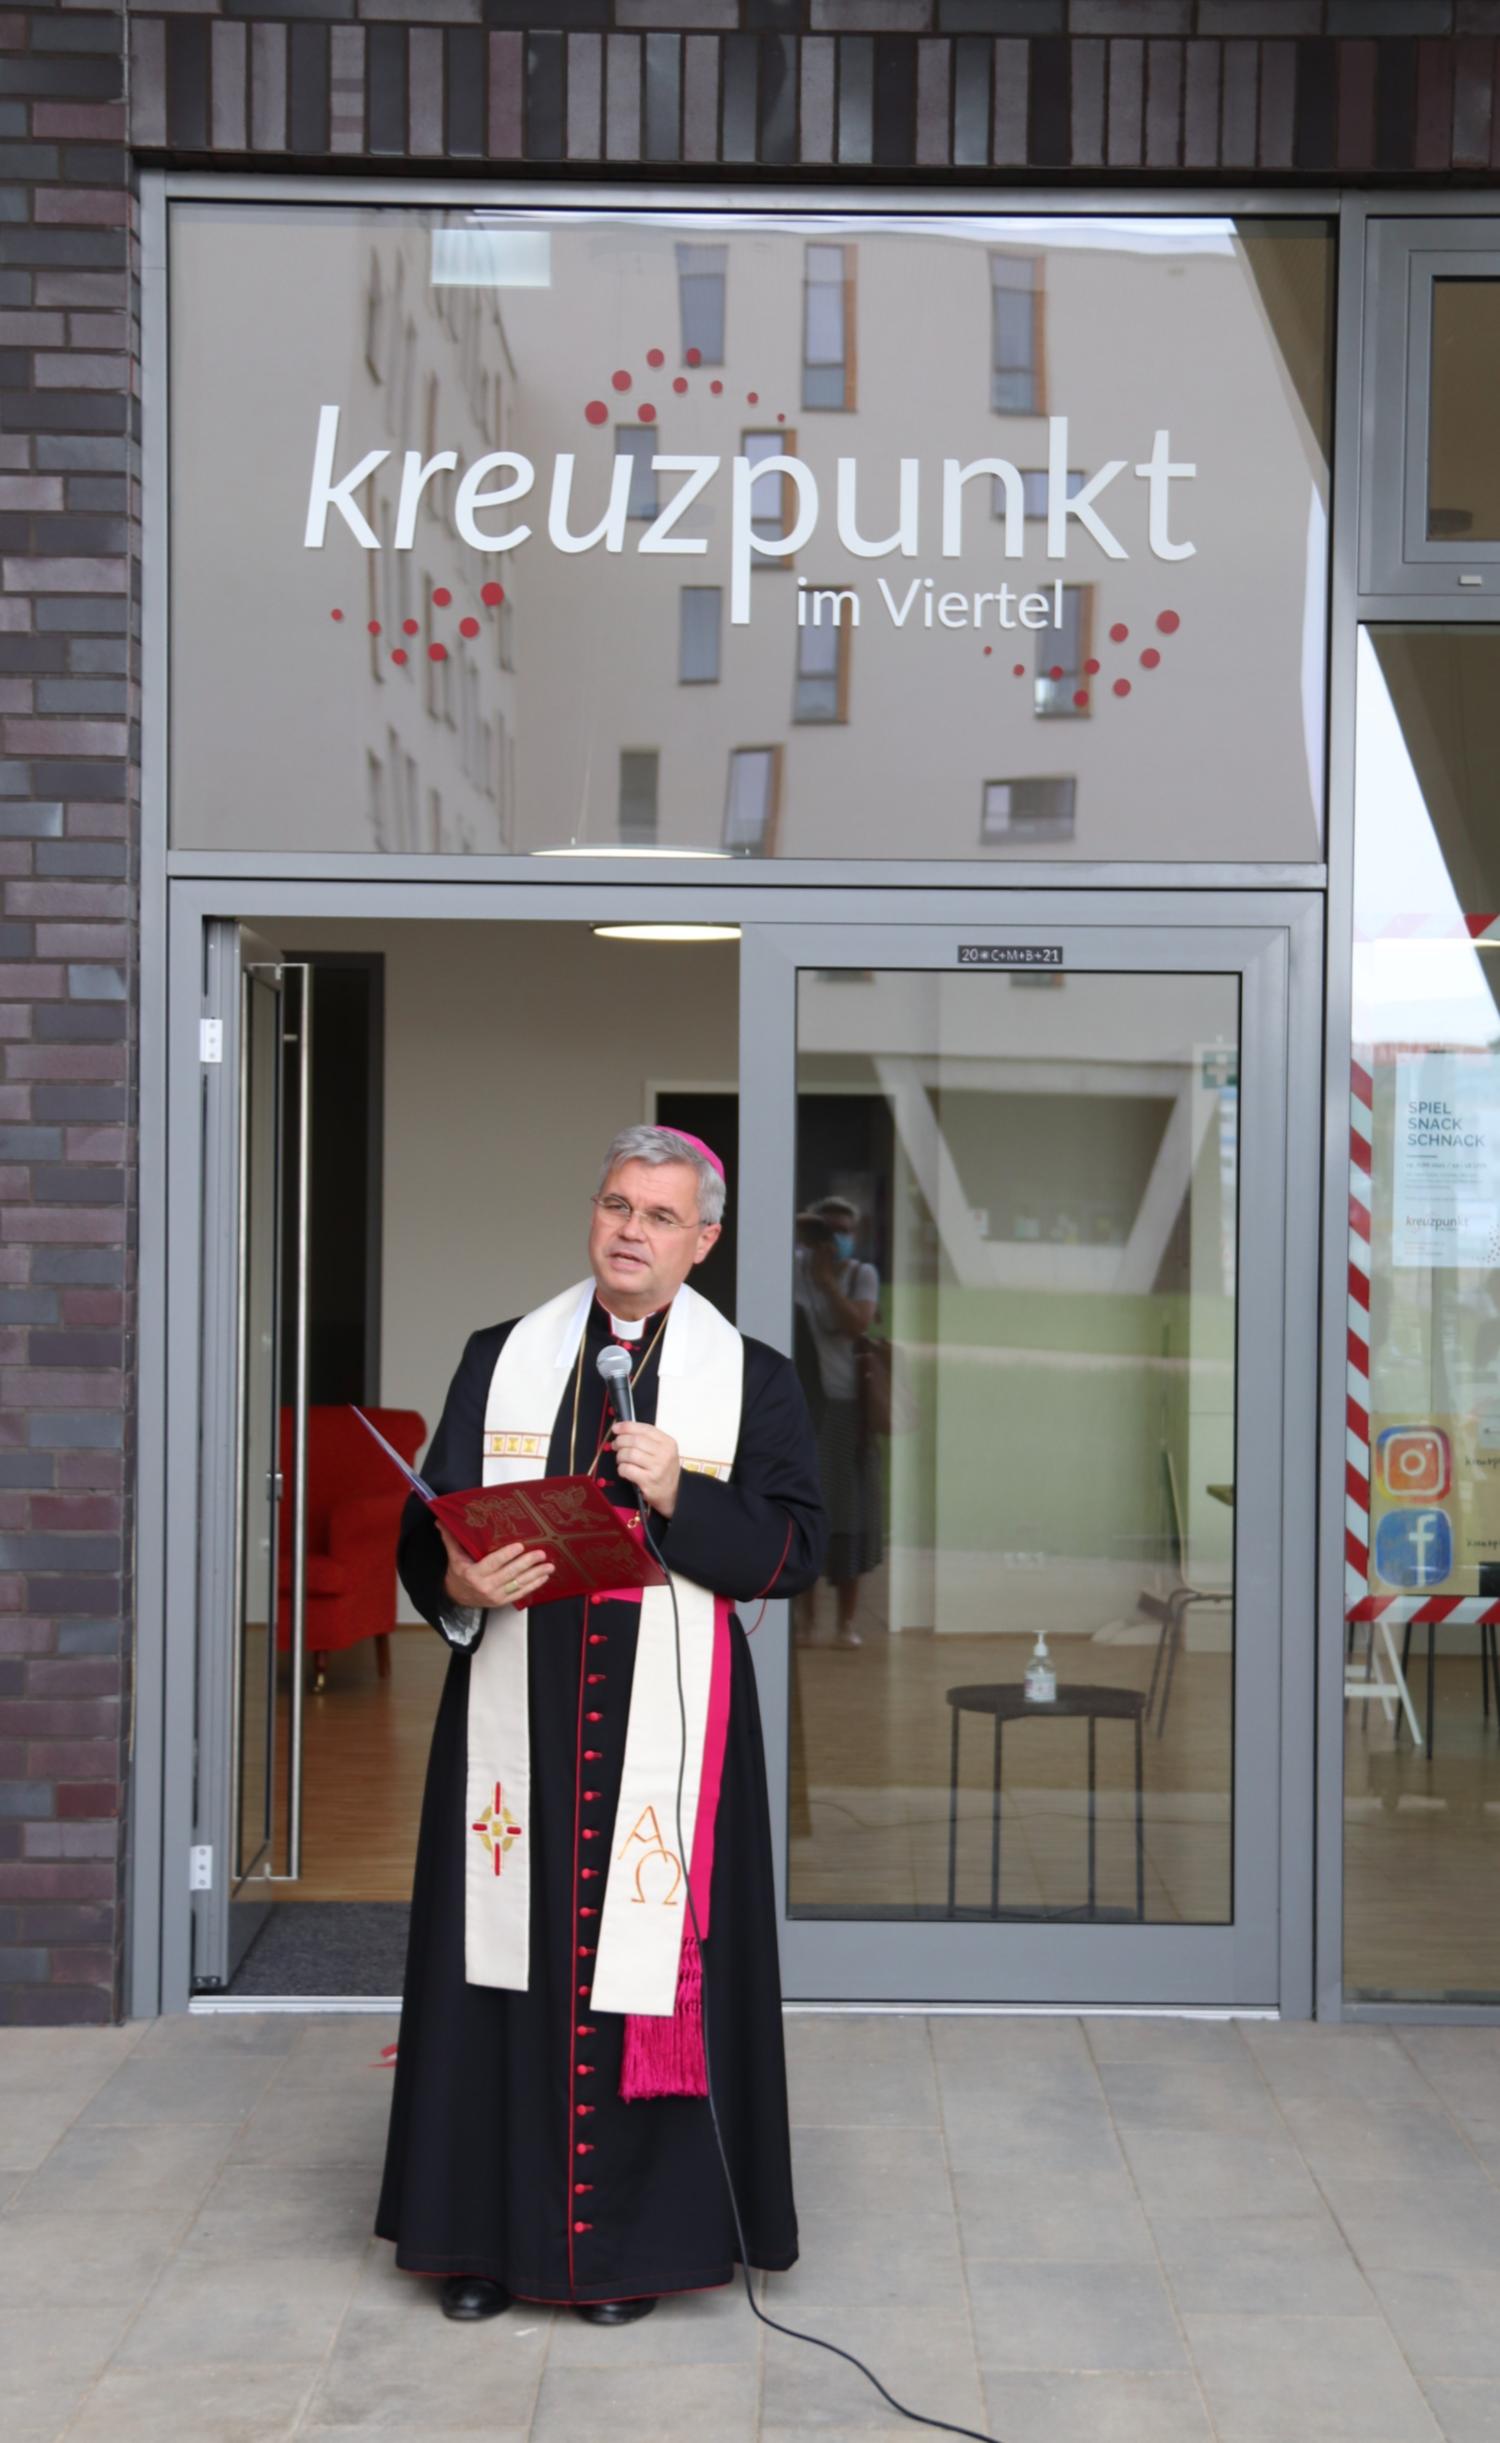 Weihbischof Dr. Udo Markus Bentz bei seiner Ansprache vor dem Kreuzpunkt (c) Bistum Mainz / Hoffmann